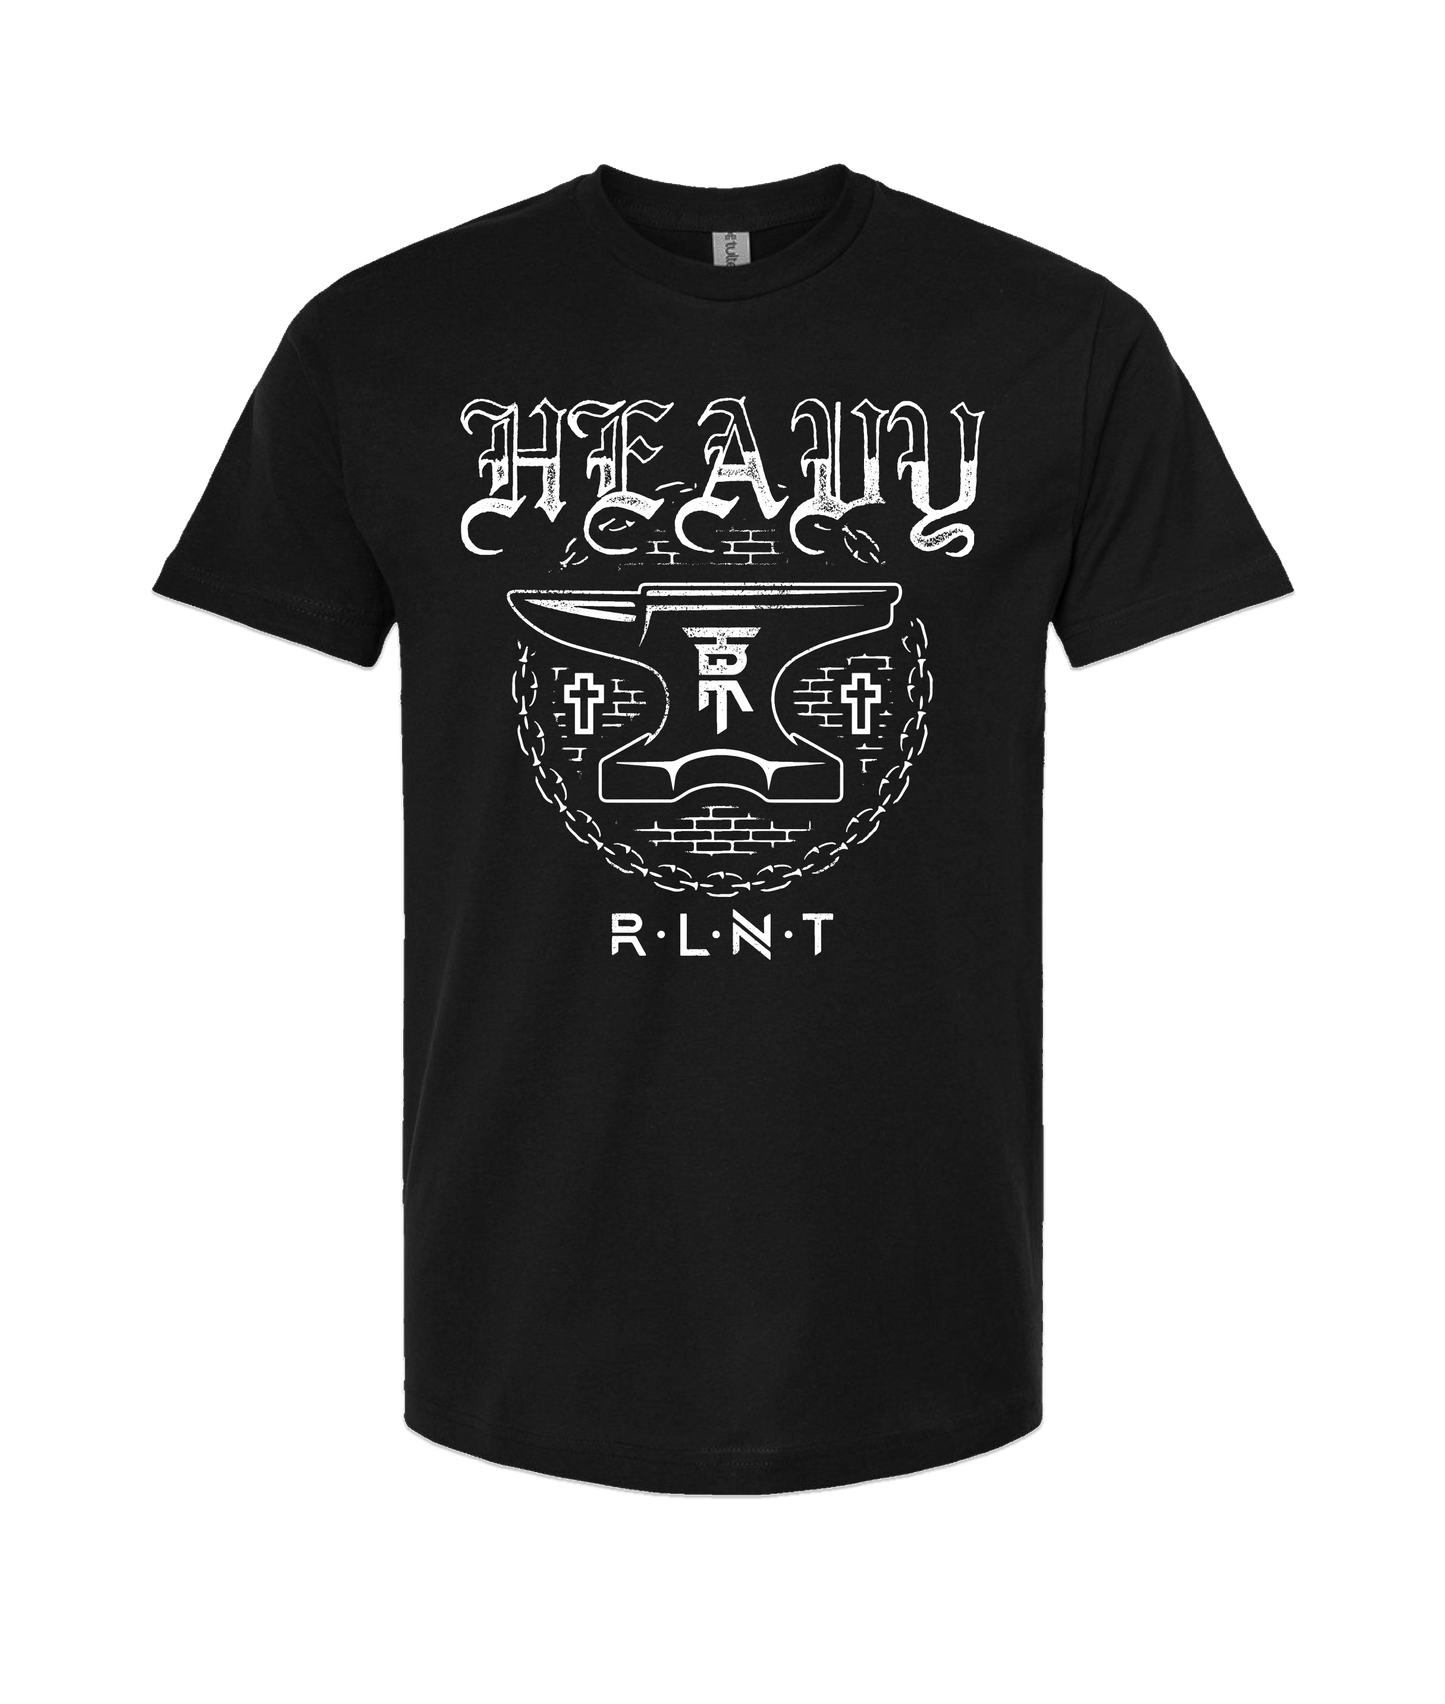 Relent - HEAVY - Black T-Shirt